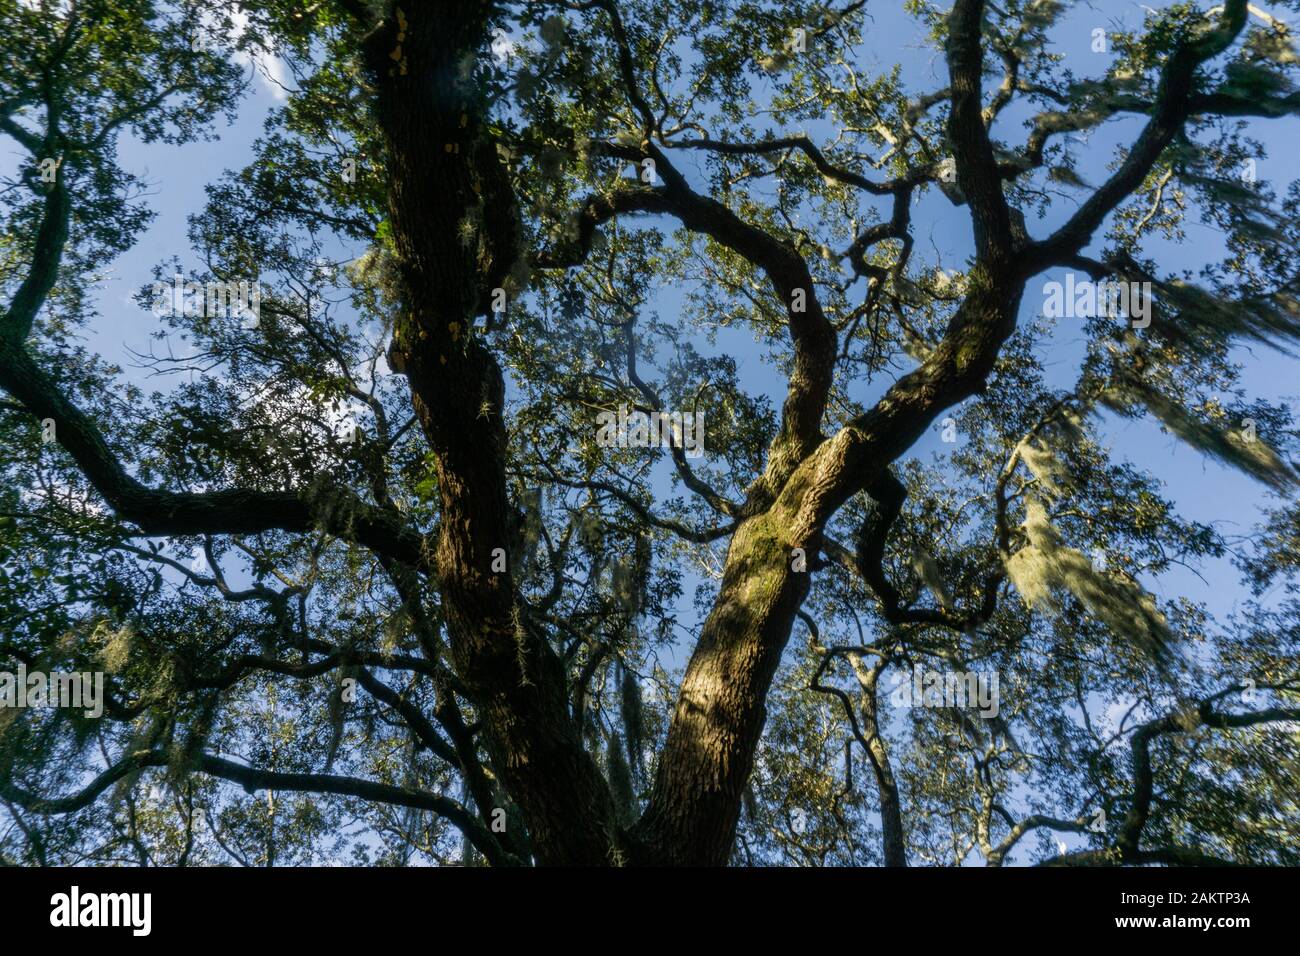 Die lebenden Eichen sind Savannahs Lieblingsbaum, verzaubern Straßen, Parks und Friedhöfe in der ganzen Stadt. Stockfoto